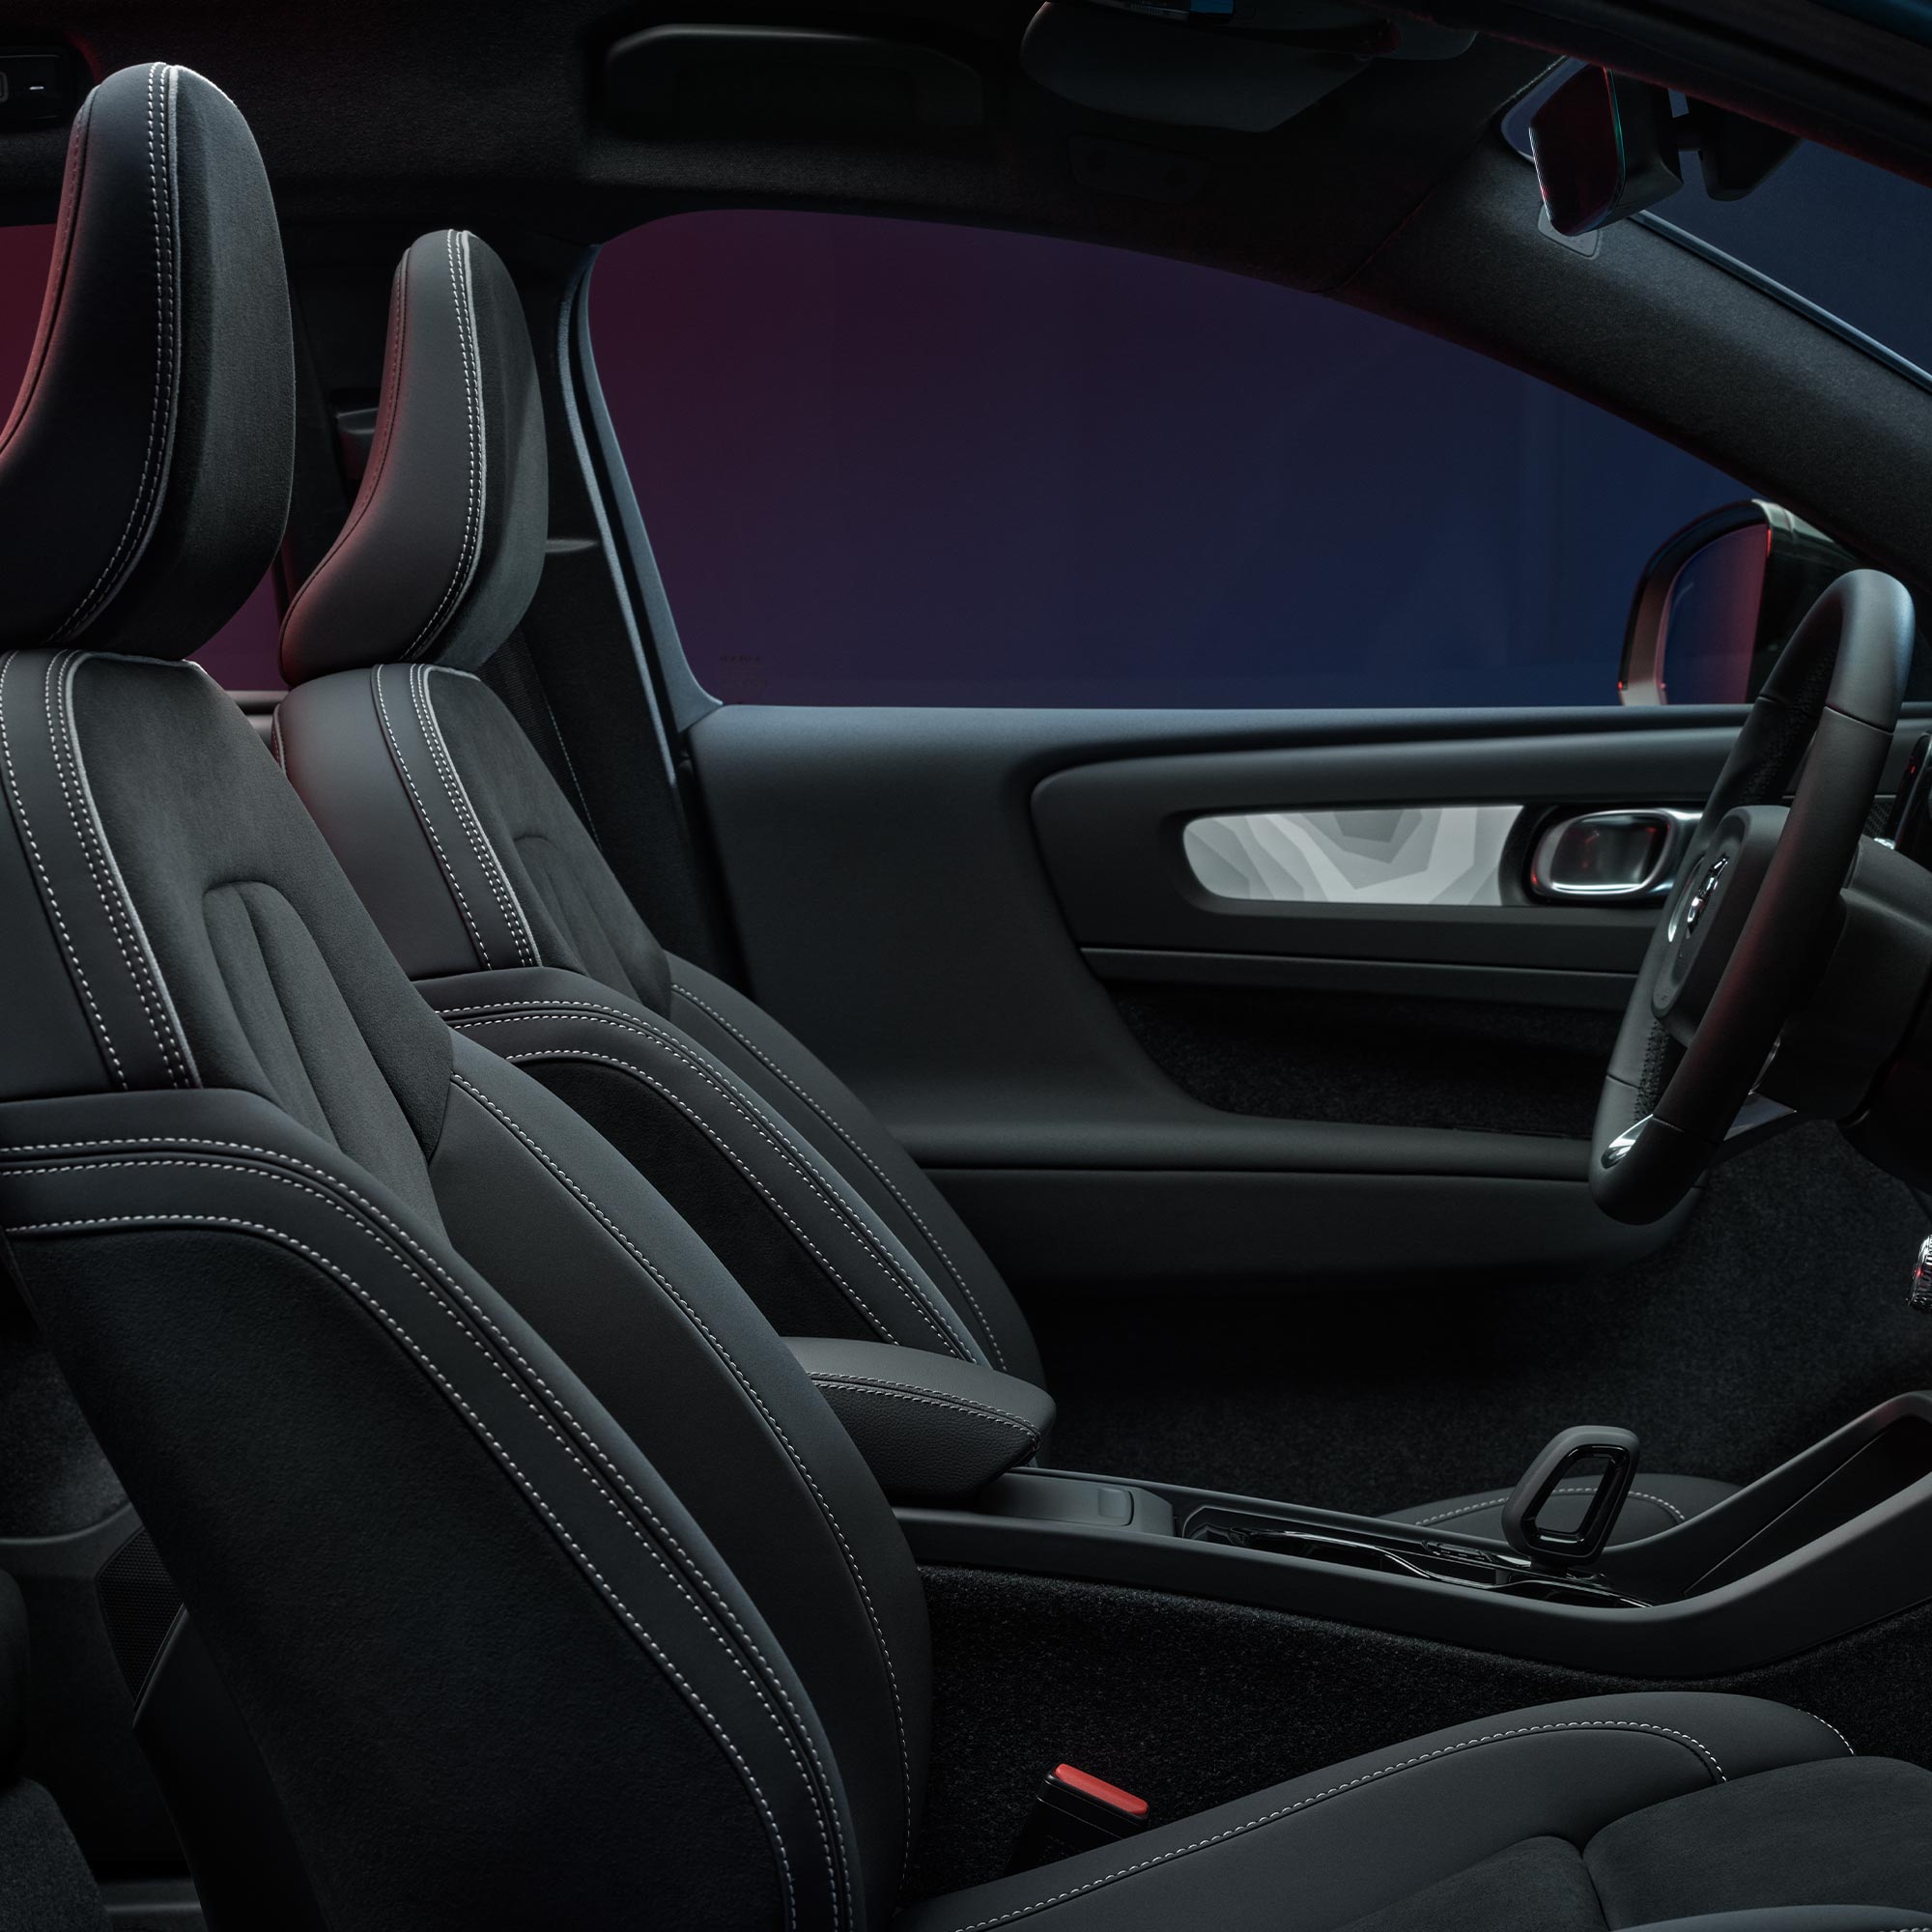 Vista interior dos bancos dianteiros e volante do Volvo C40 Recharge.